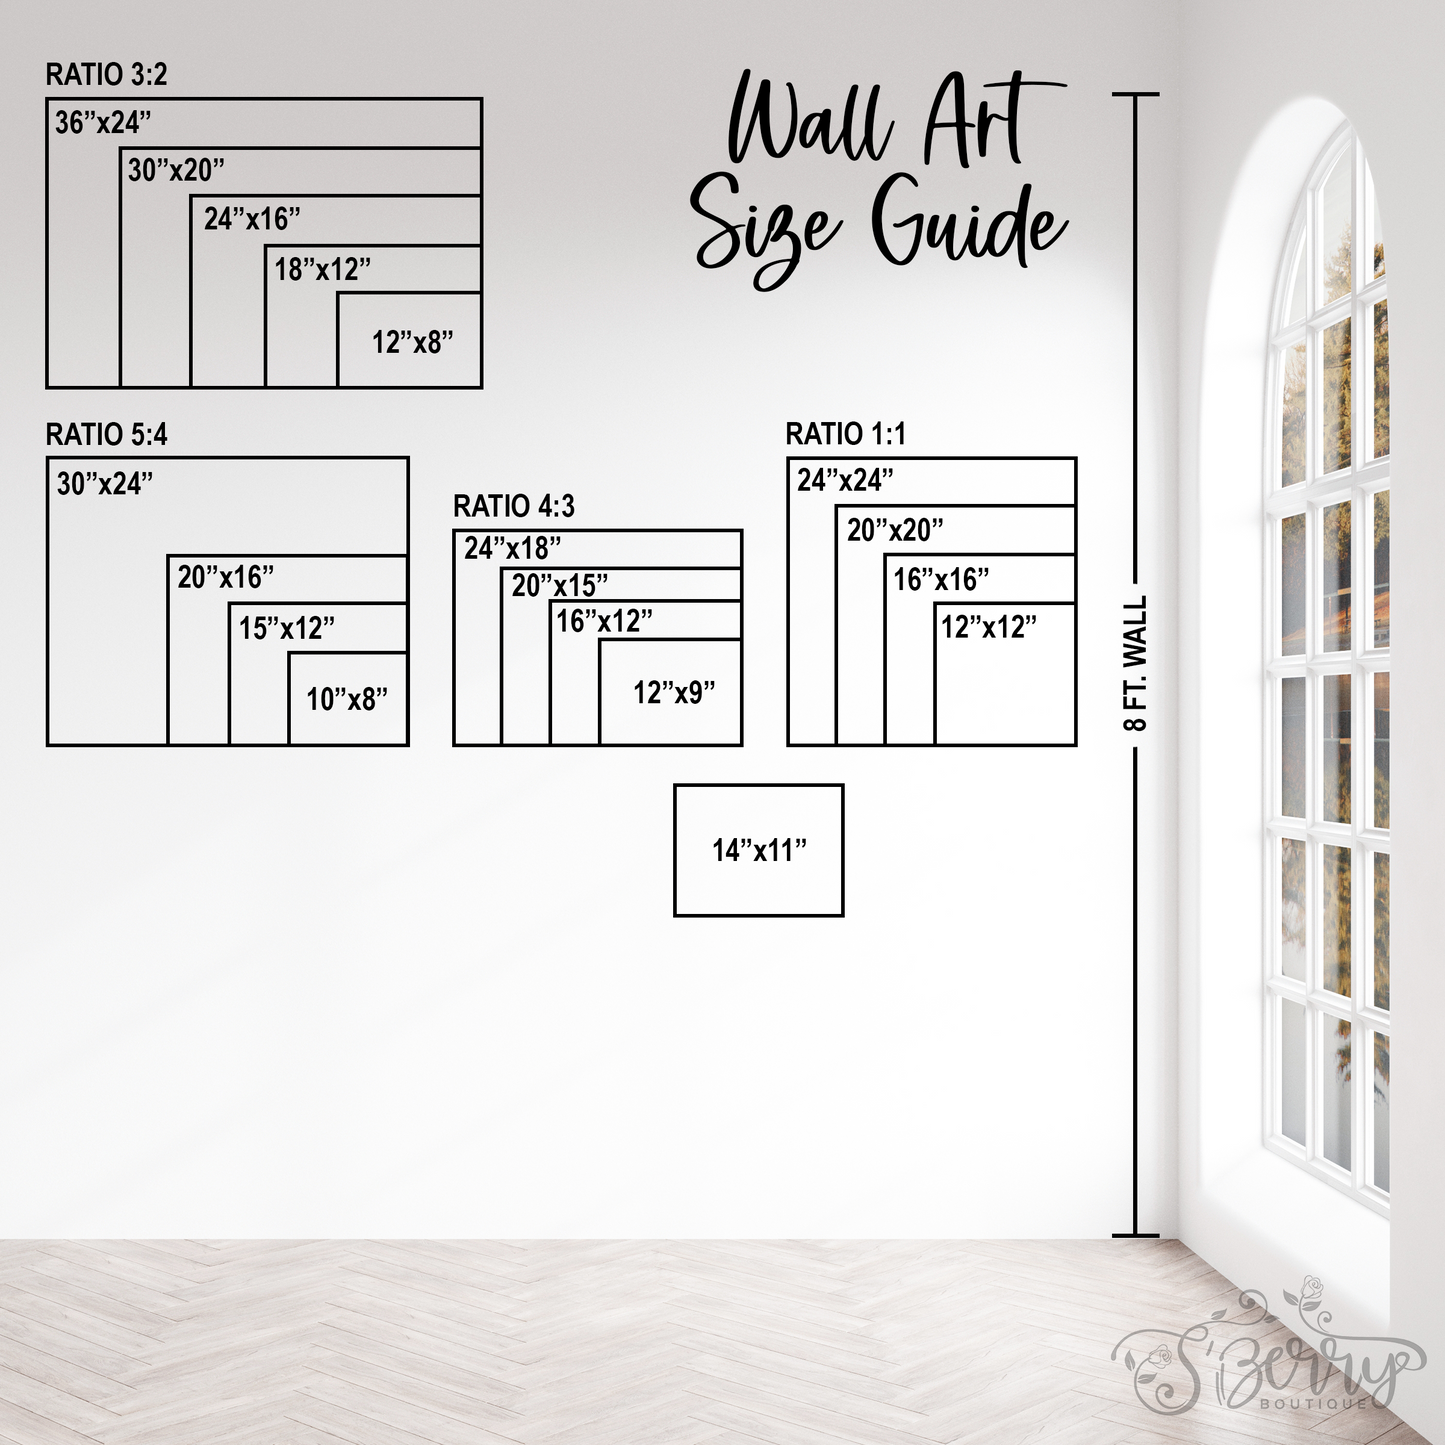 Wall Art Size Guide - Landscape - S'Berry Boutique, LLC